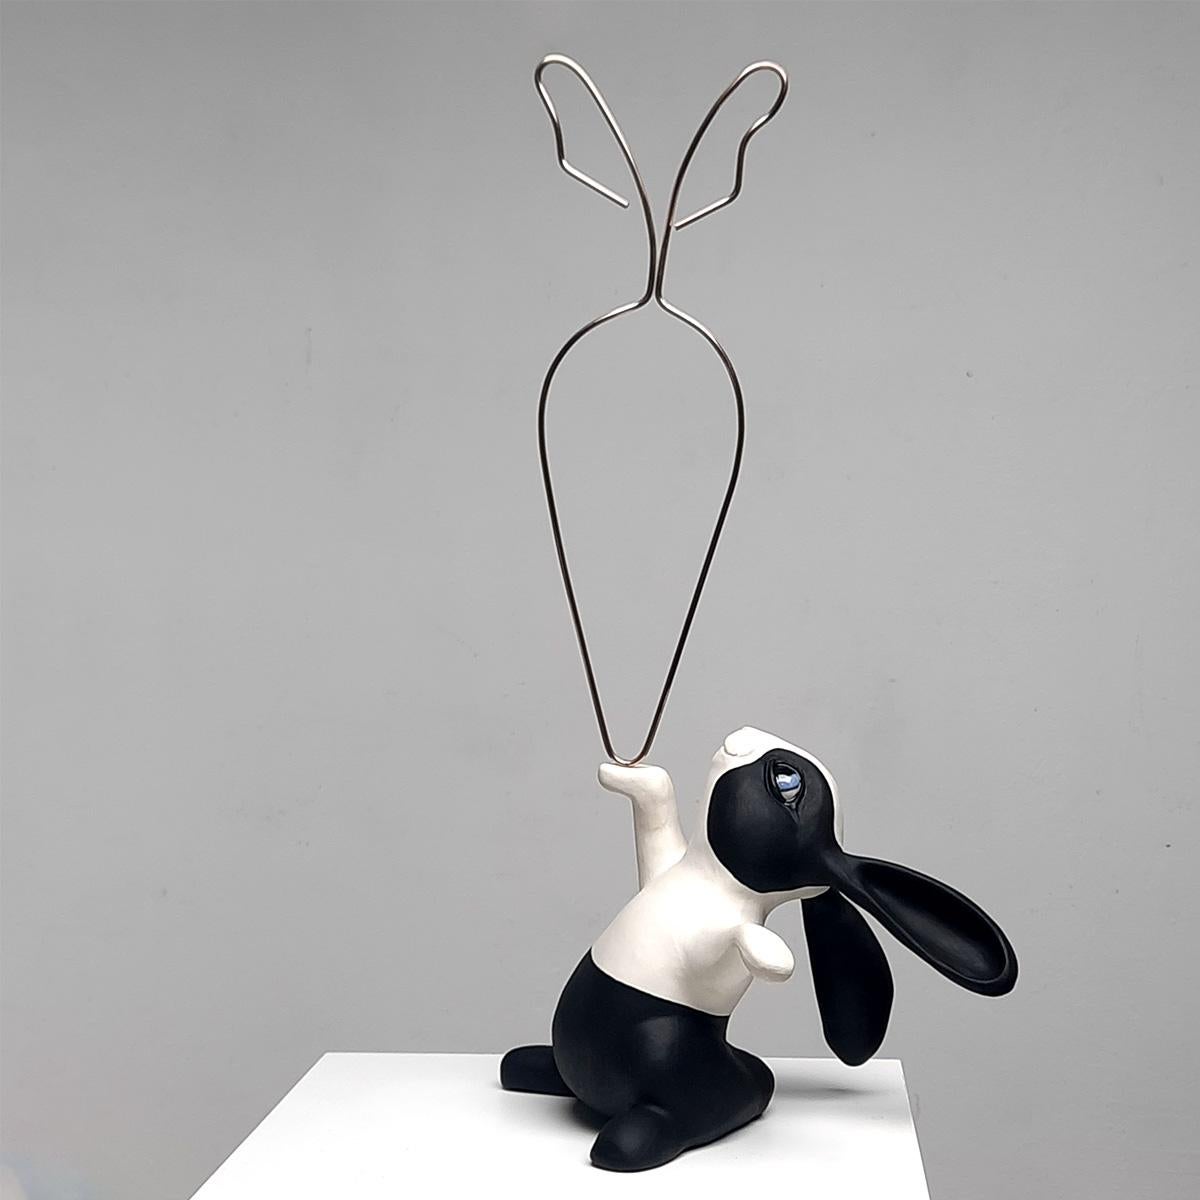 24 Carrot Gold-original realism wildlife sculpture-artwork-contemporary art - Modern Sculpture by Henk Jan Sanderman